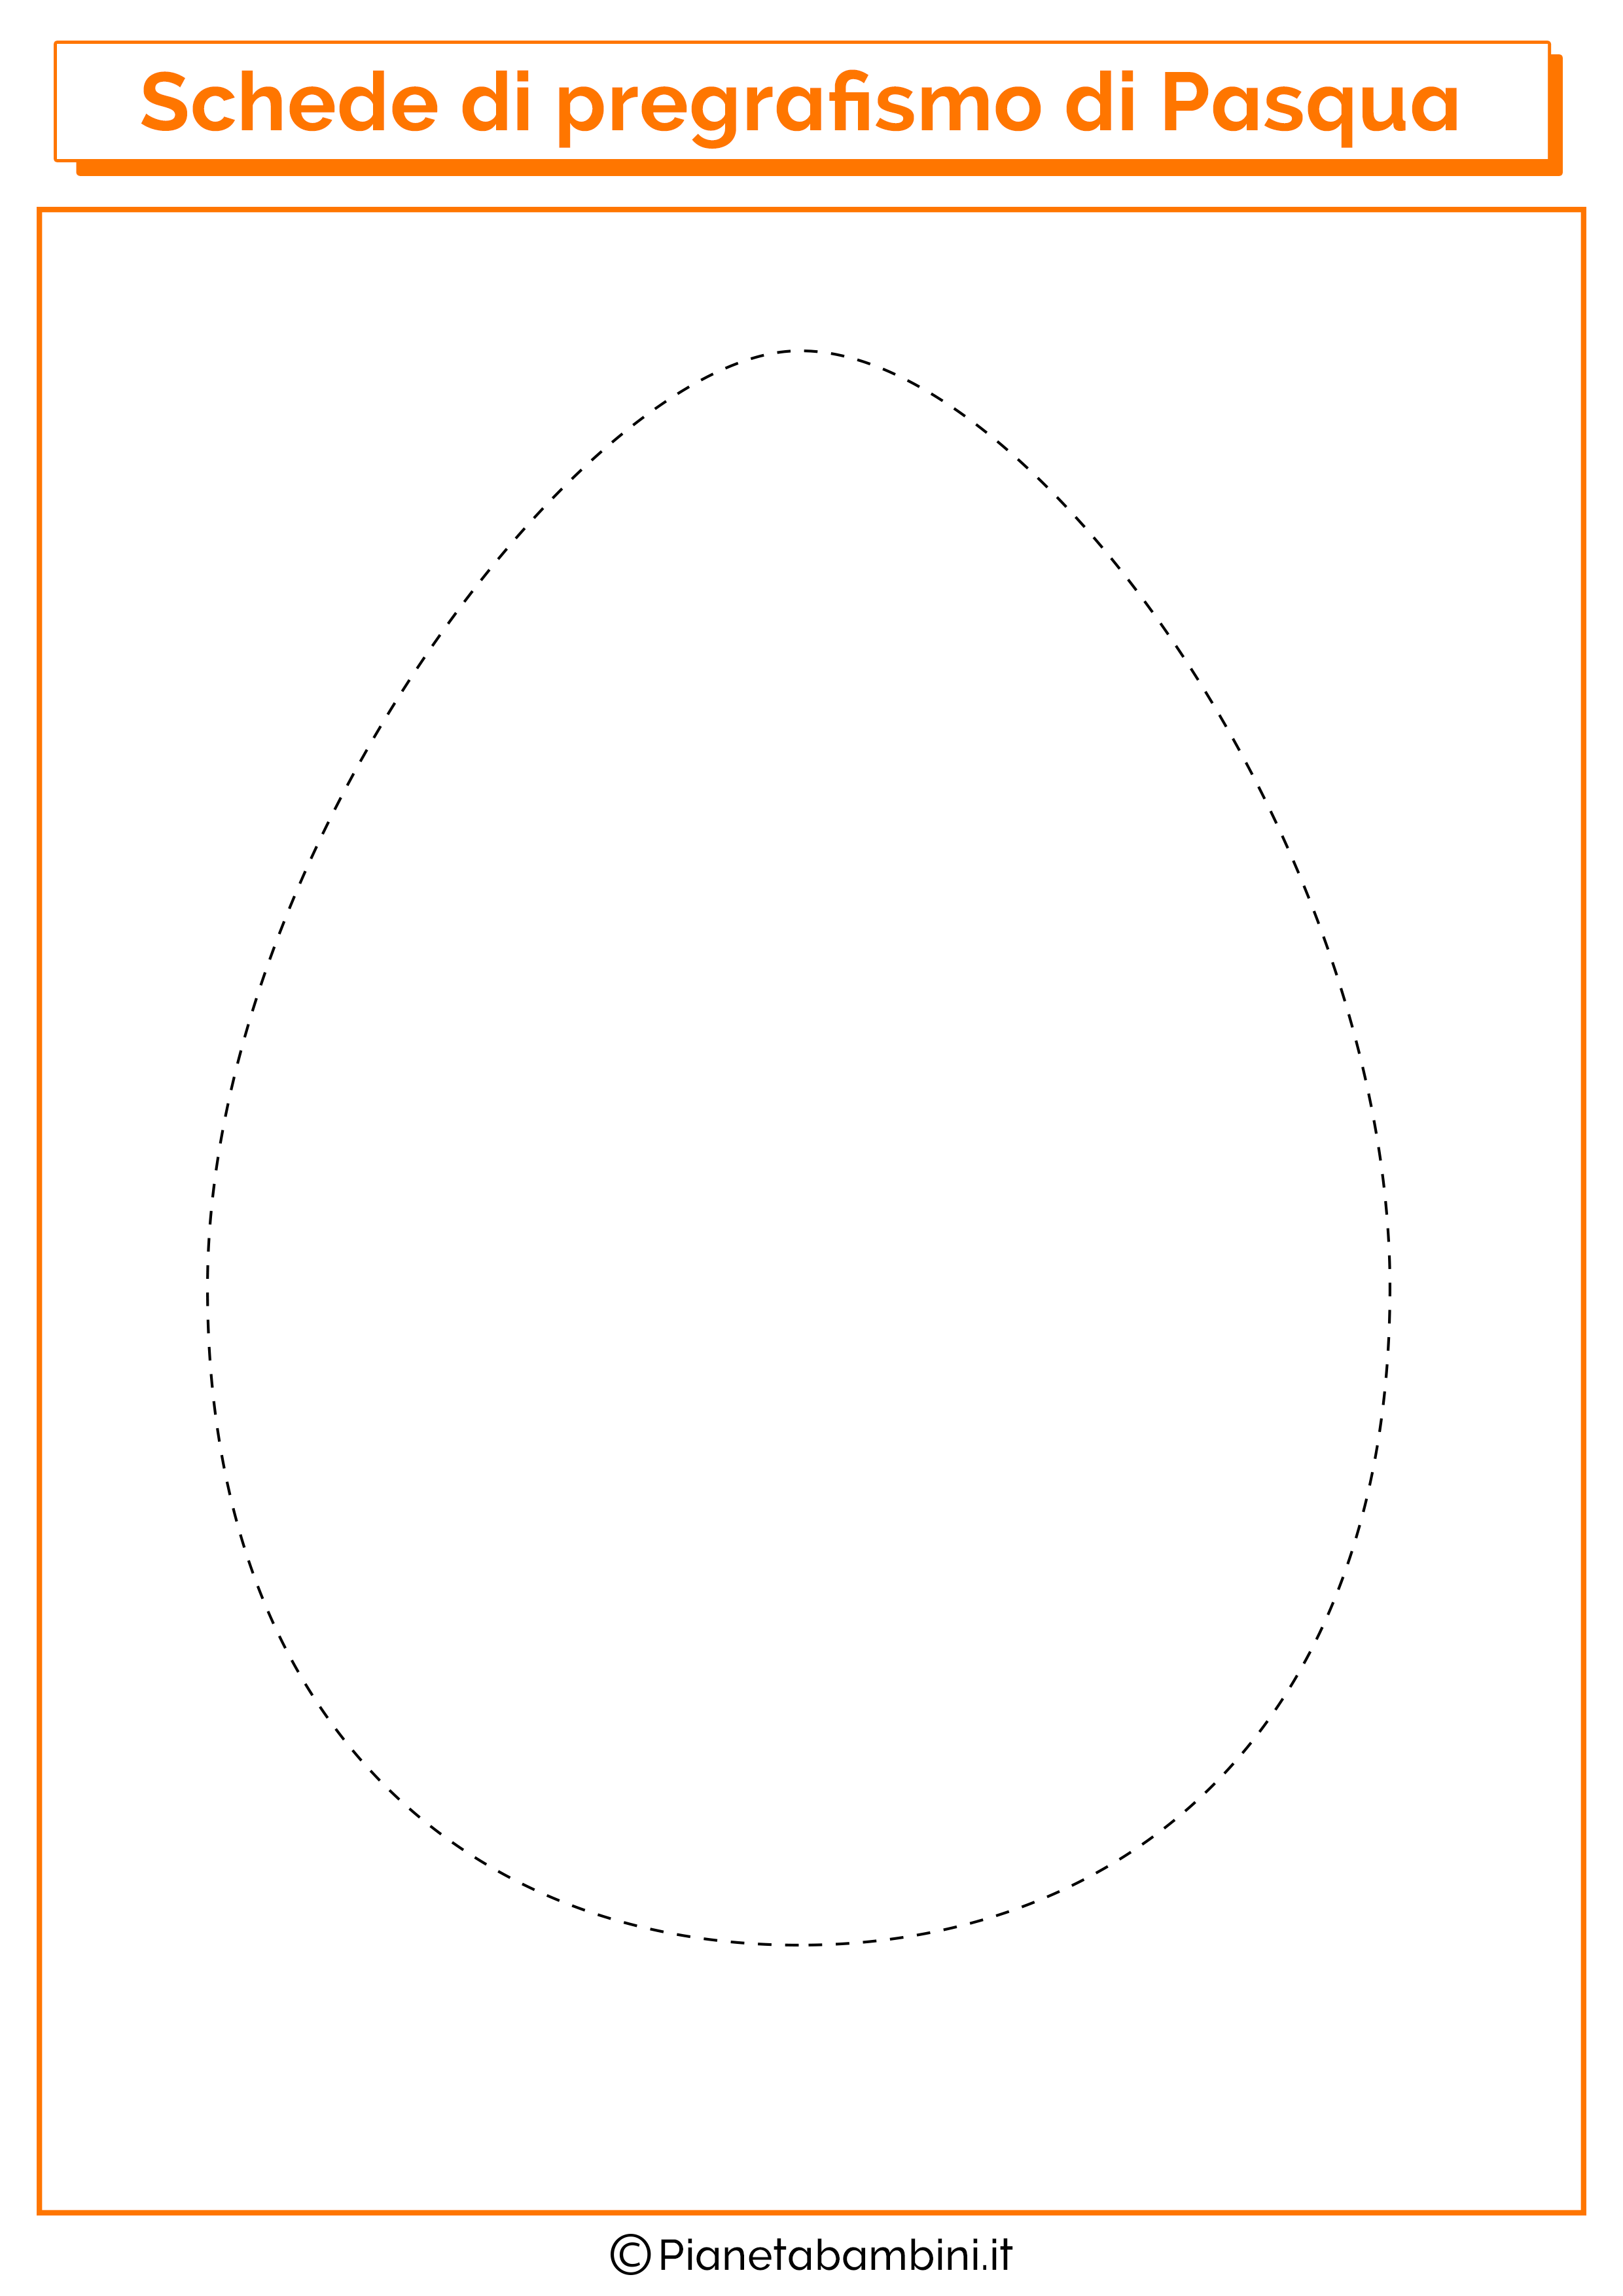 Scheda di pregrafismo di Pasqua sull'uovo grande